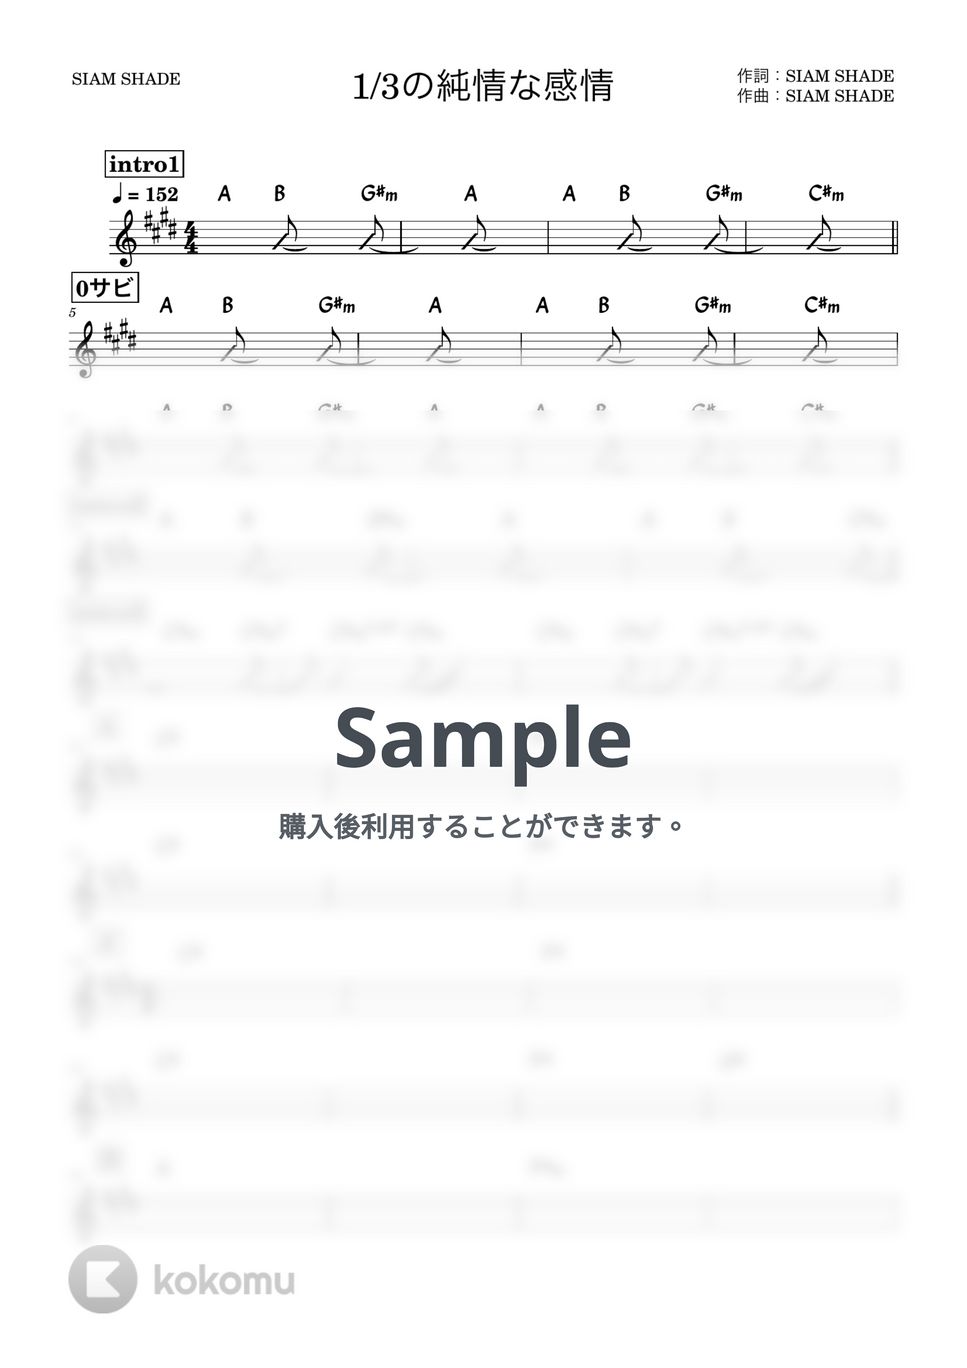 SIAM SHADE - 1/3の純情な感情 (バンド用コード譜) by 箱譜屋